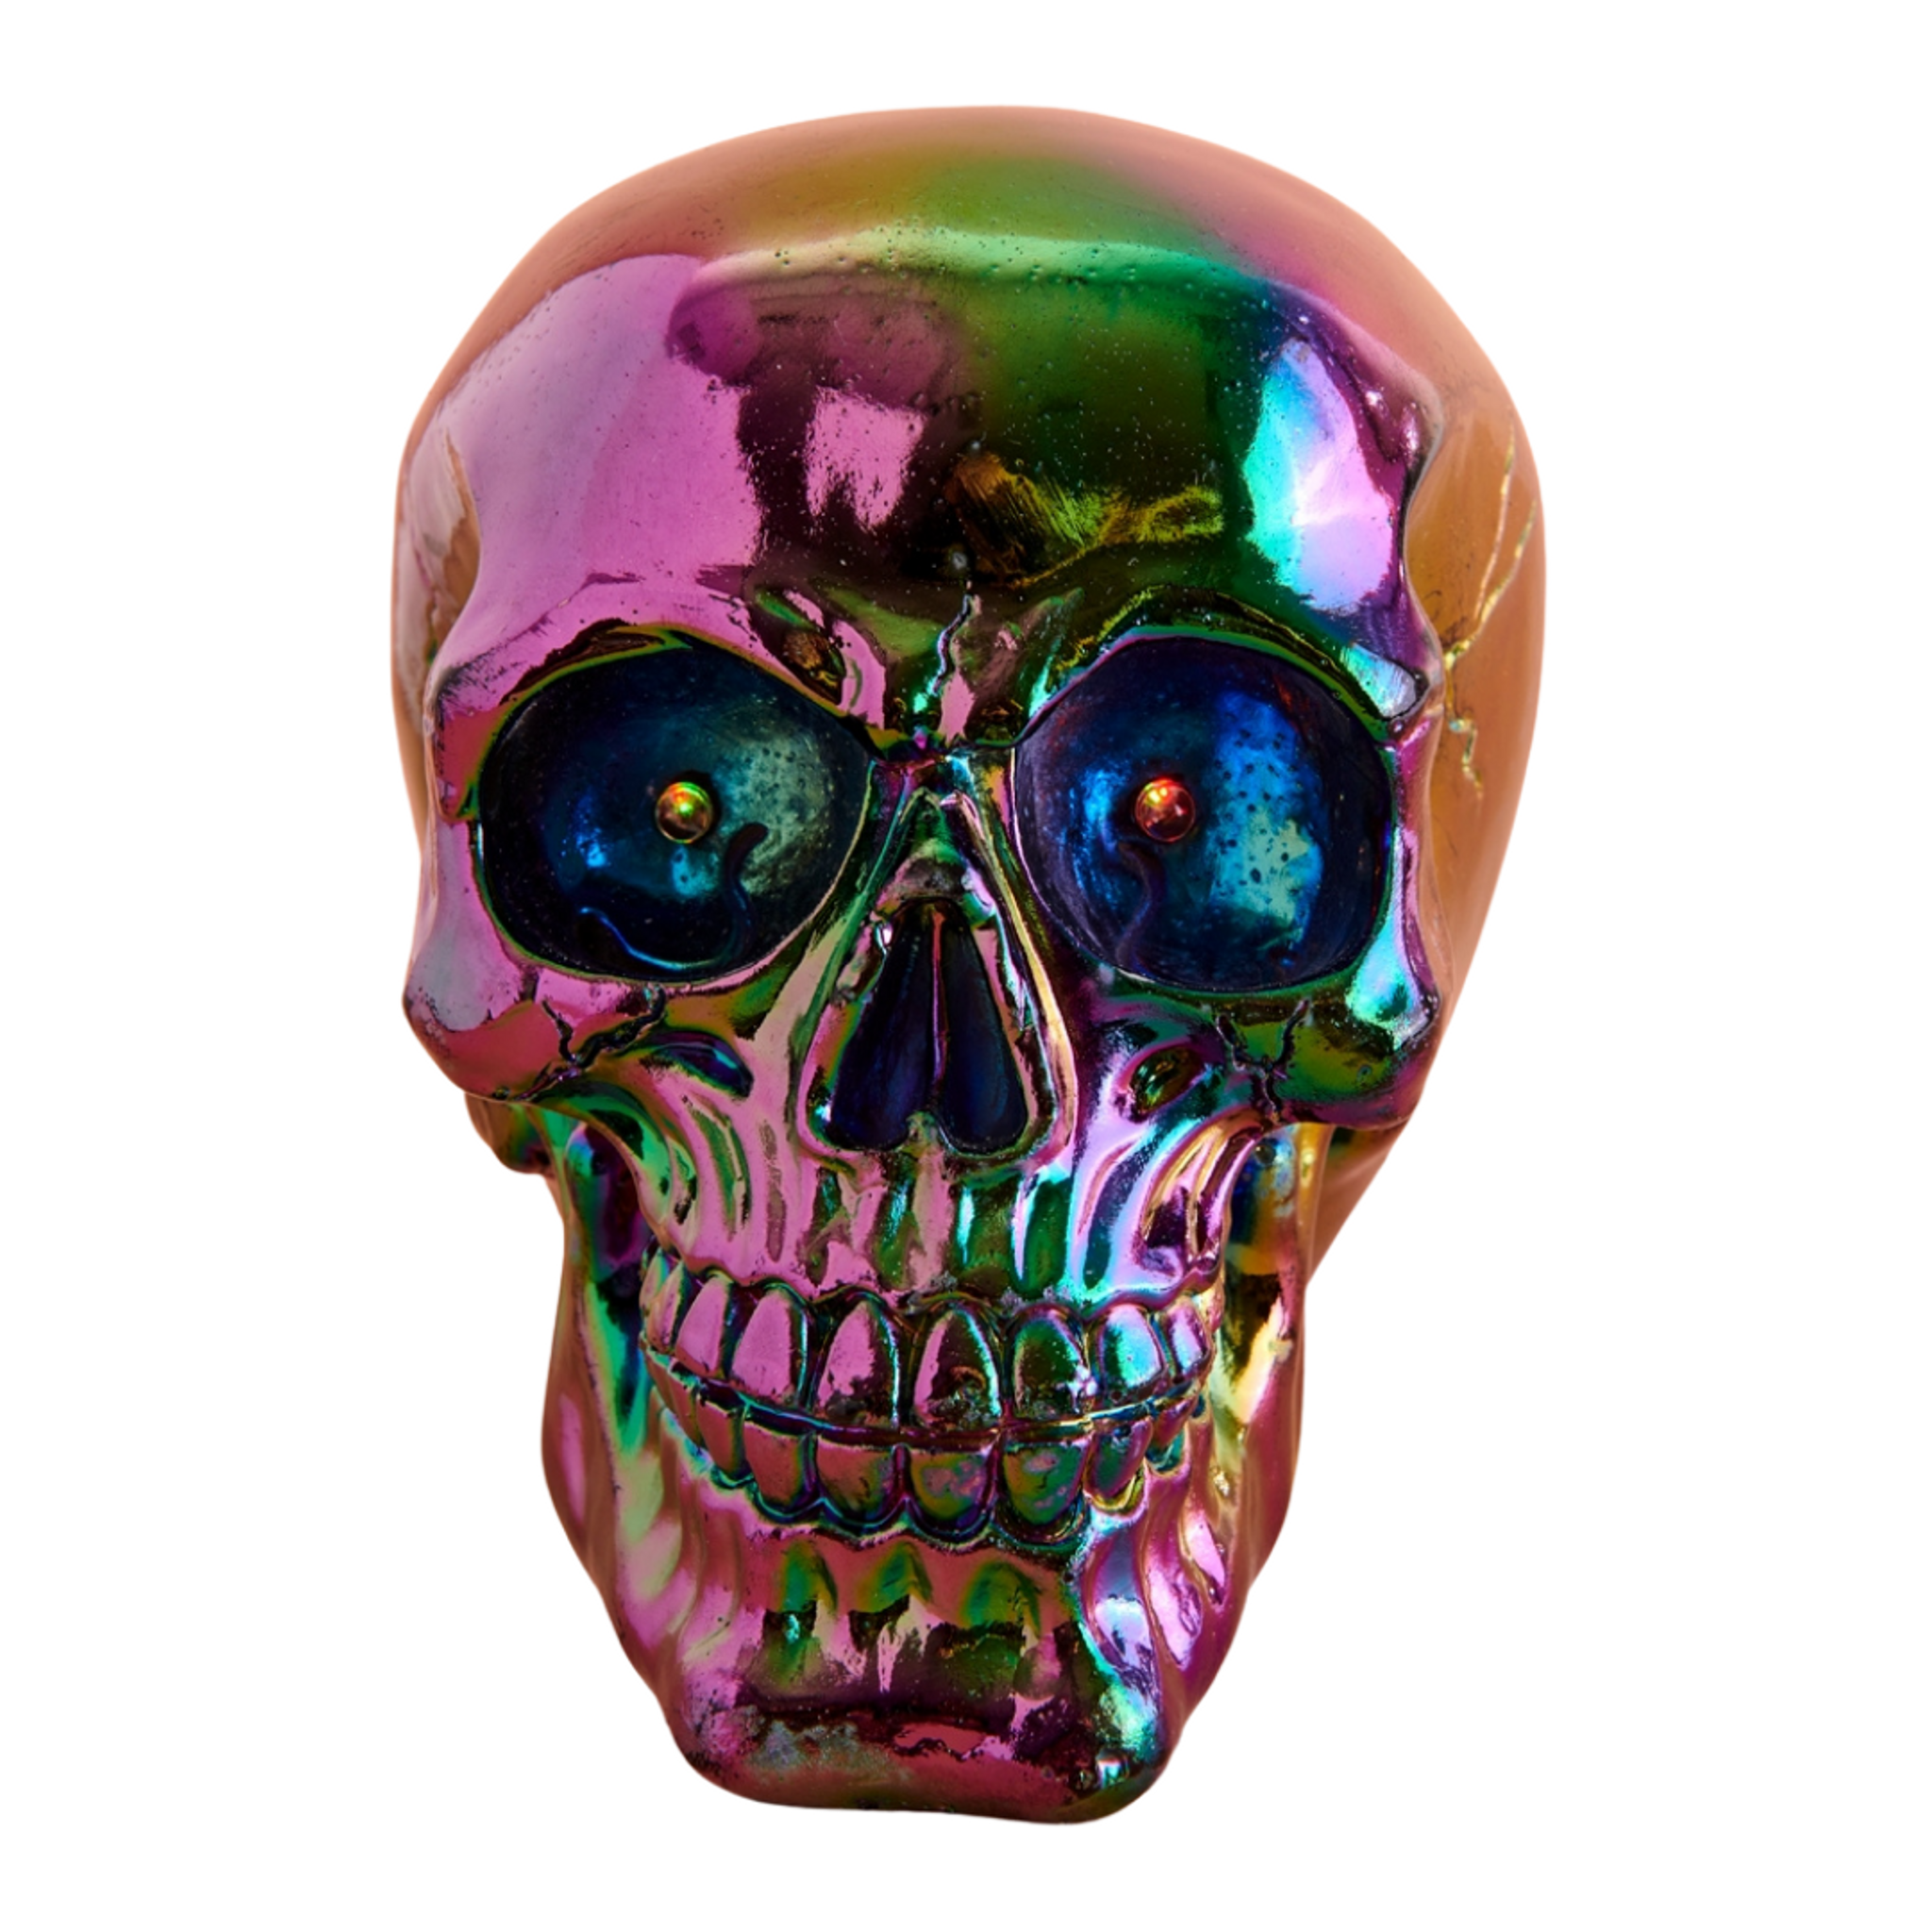 Iridescent Resin Skull with LED Light